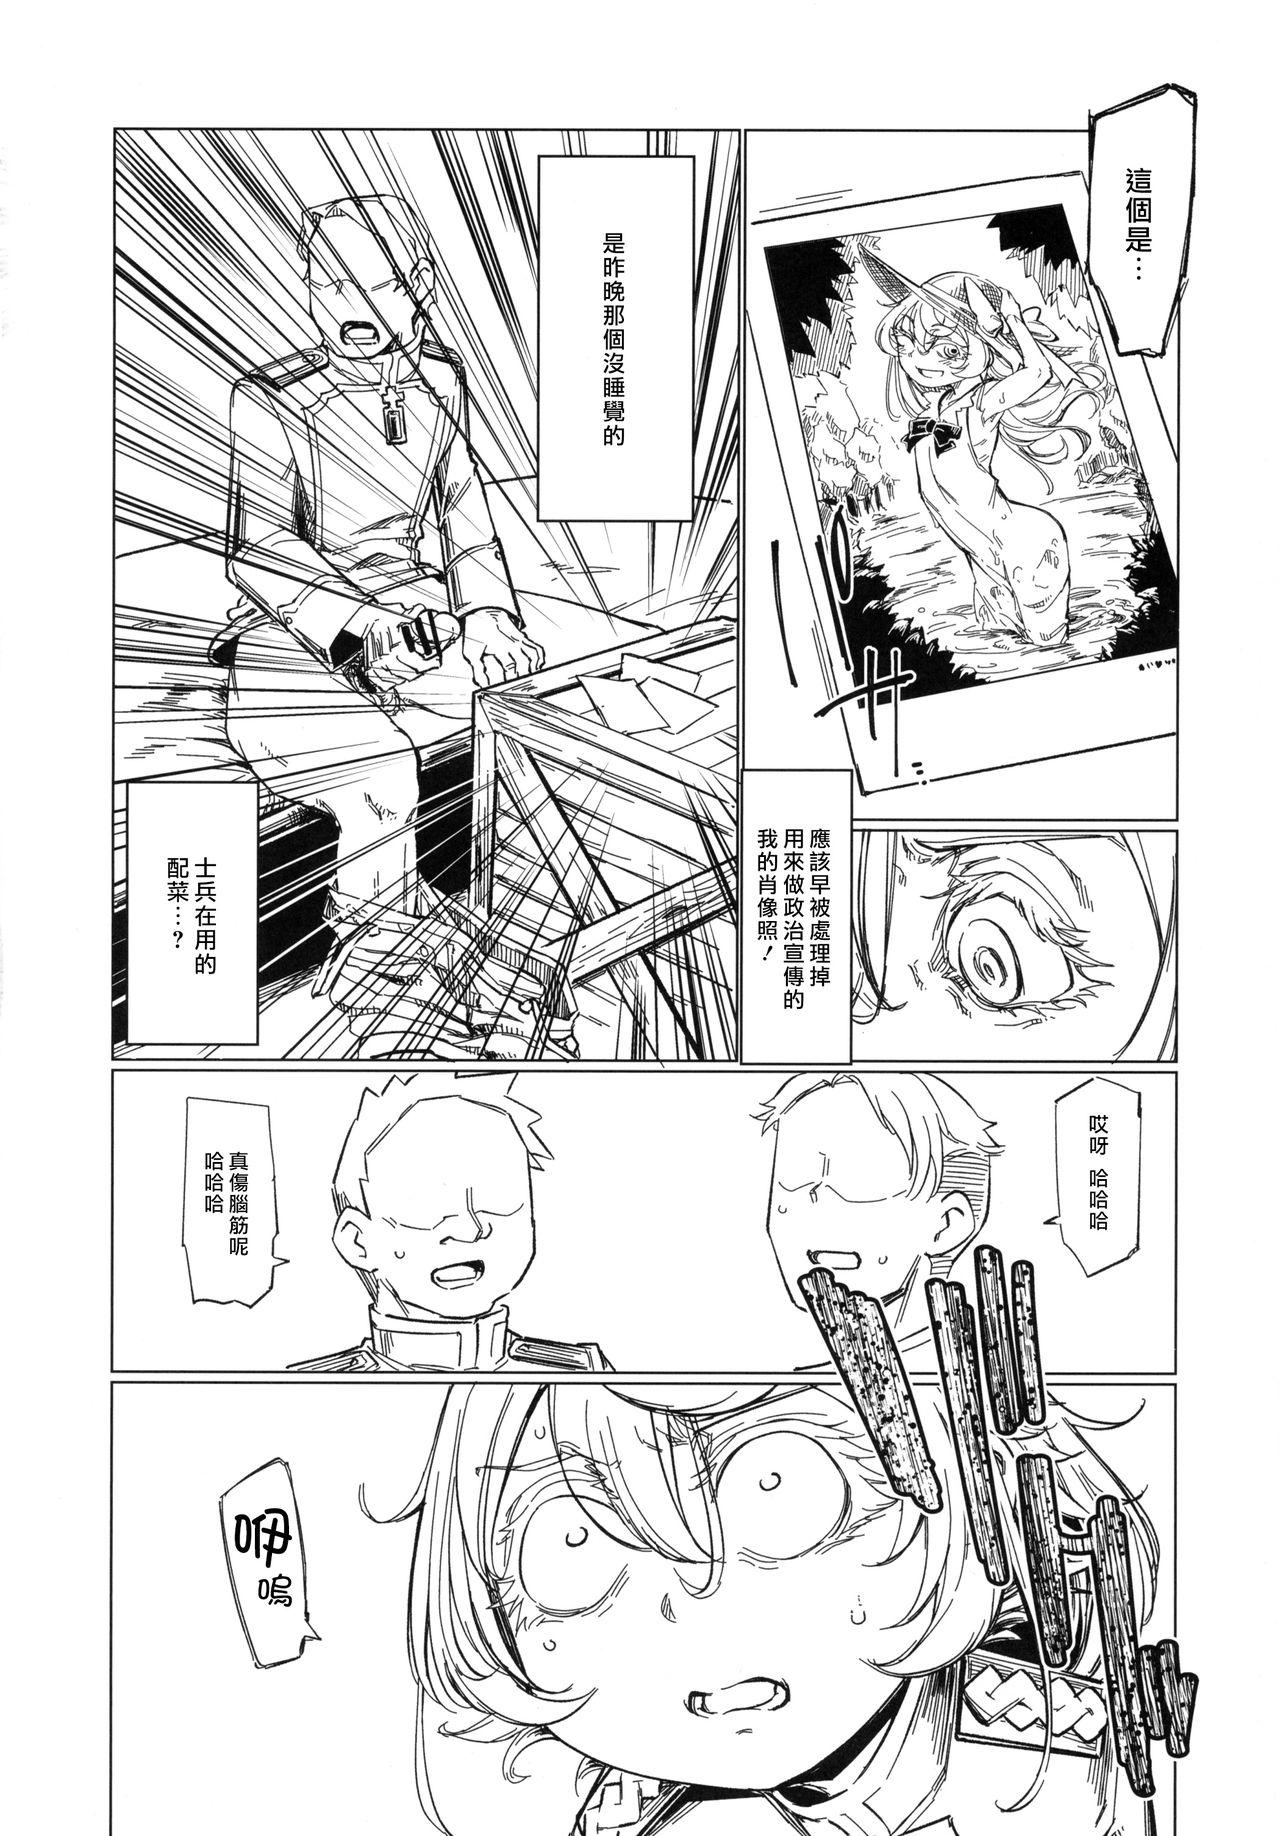 Doggystyle Saizensen no Degrechaf Ojisan - Youjo senki Blowjob Contest - Page 9